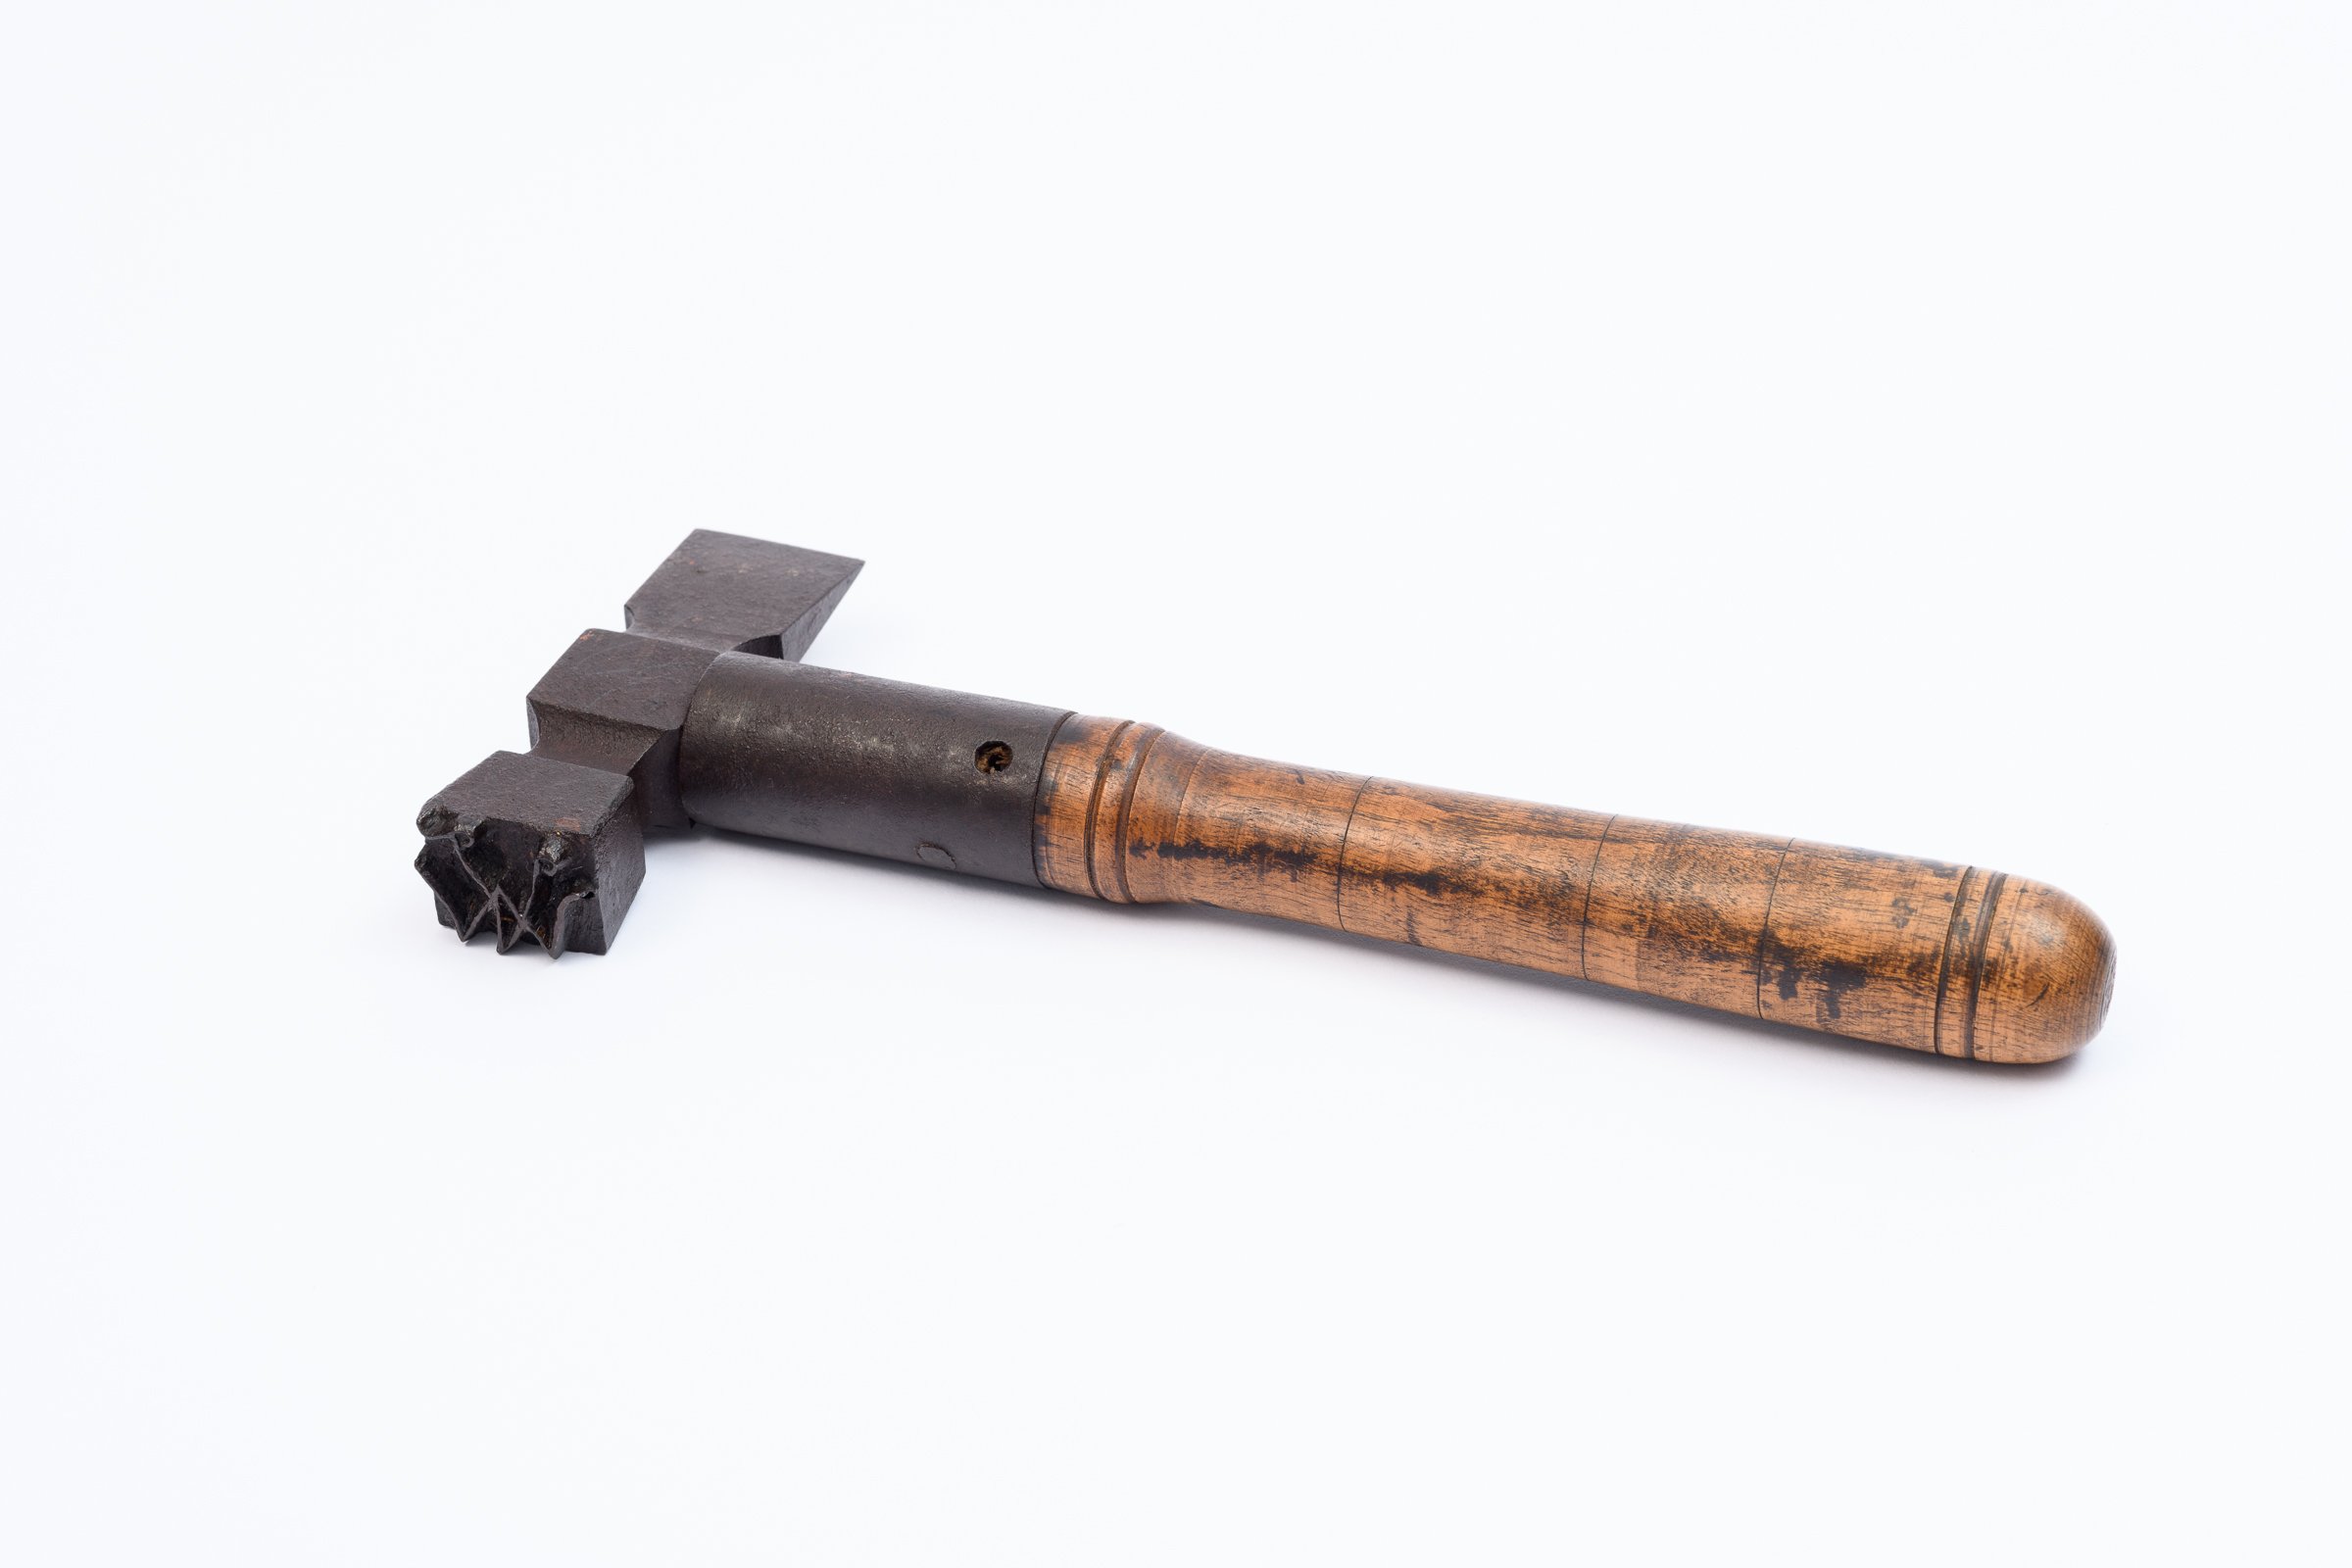 Anschlaghammer zur Kennzeichnung der Baumstämme (Binnenschifffahrts-Museum Oderberg CC BY-NC-SA)